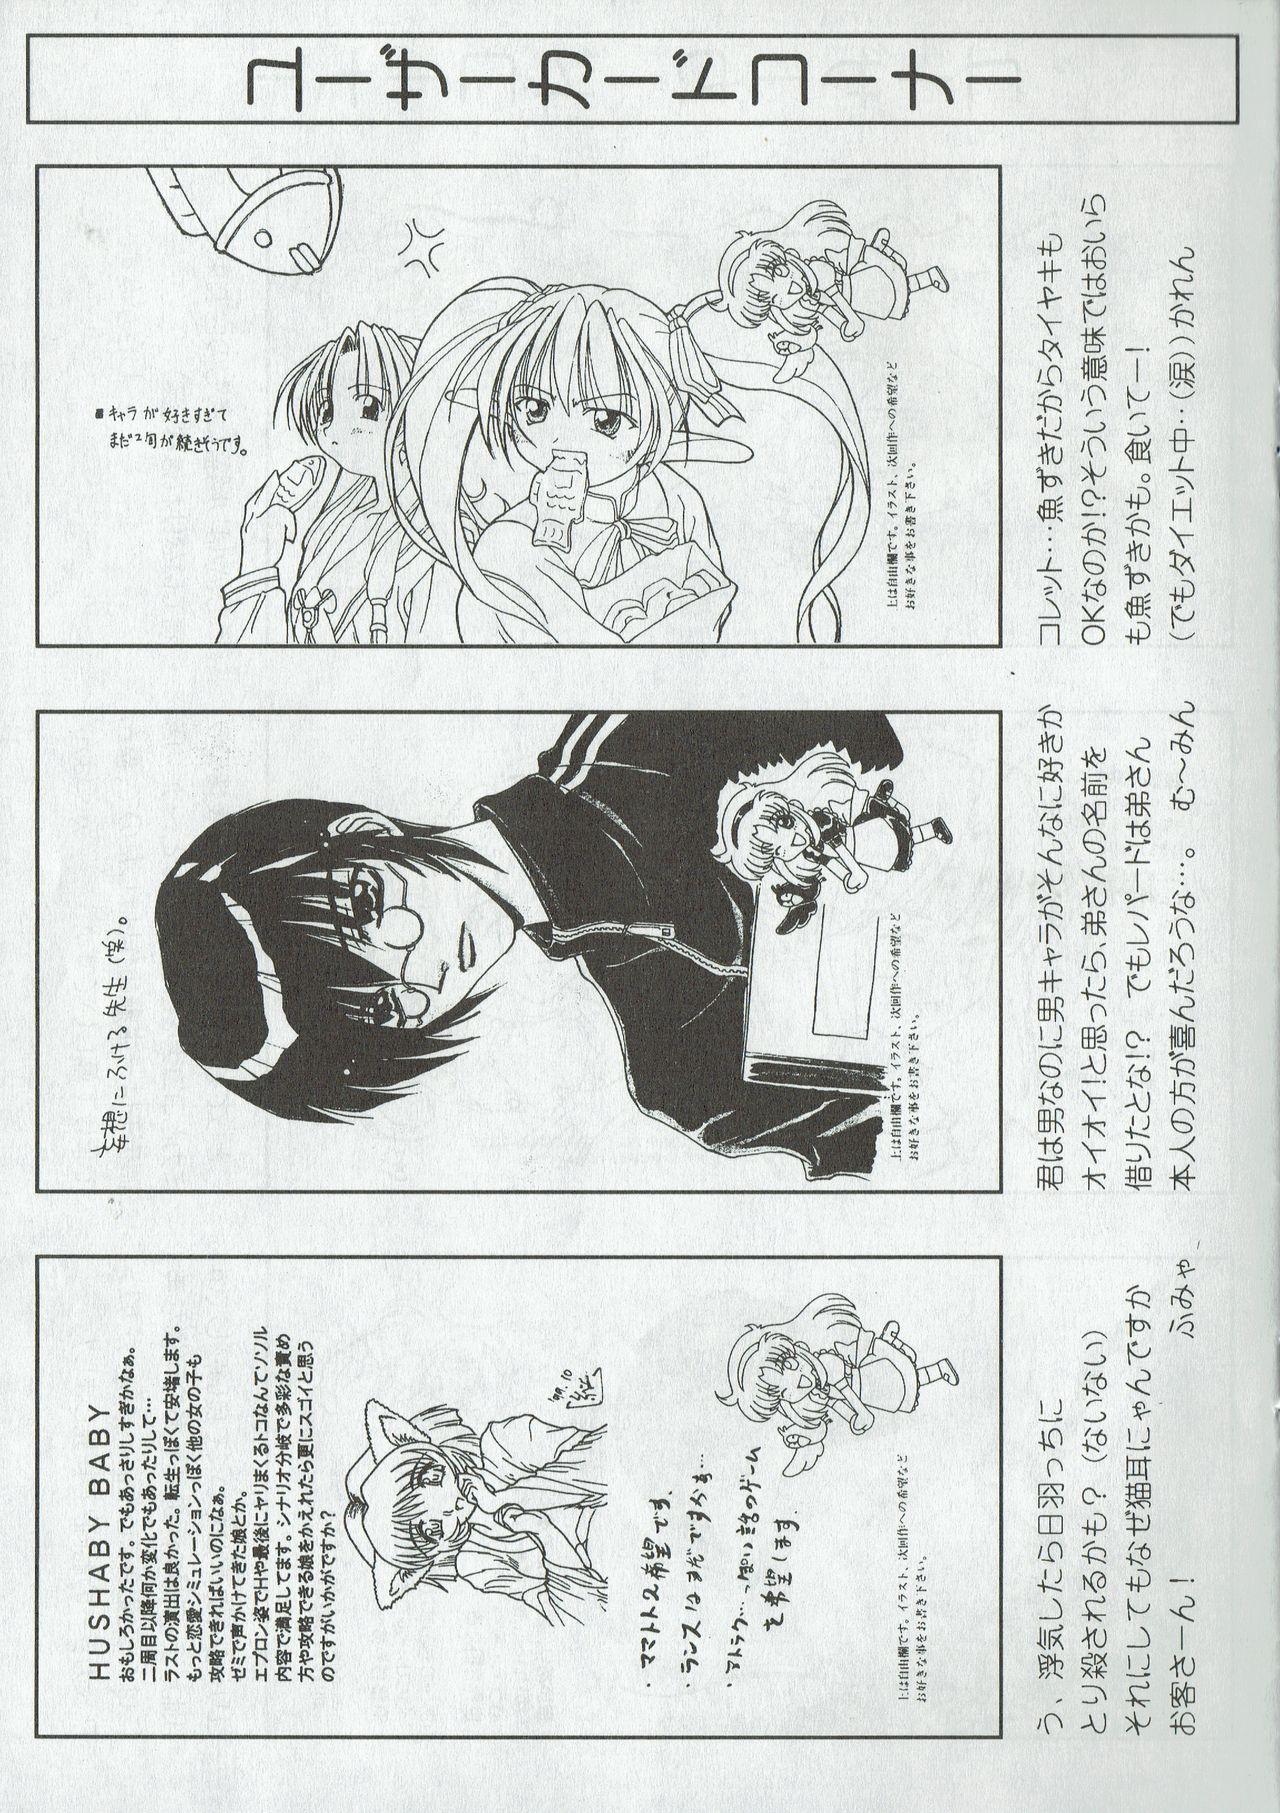 Arisu no Denchi Bakudan Vol. 09 25